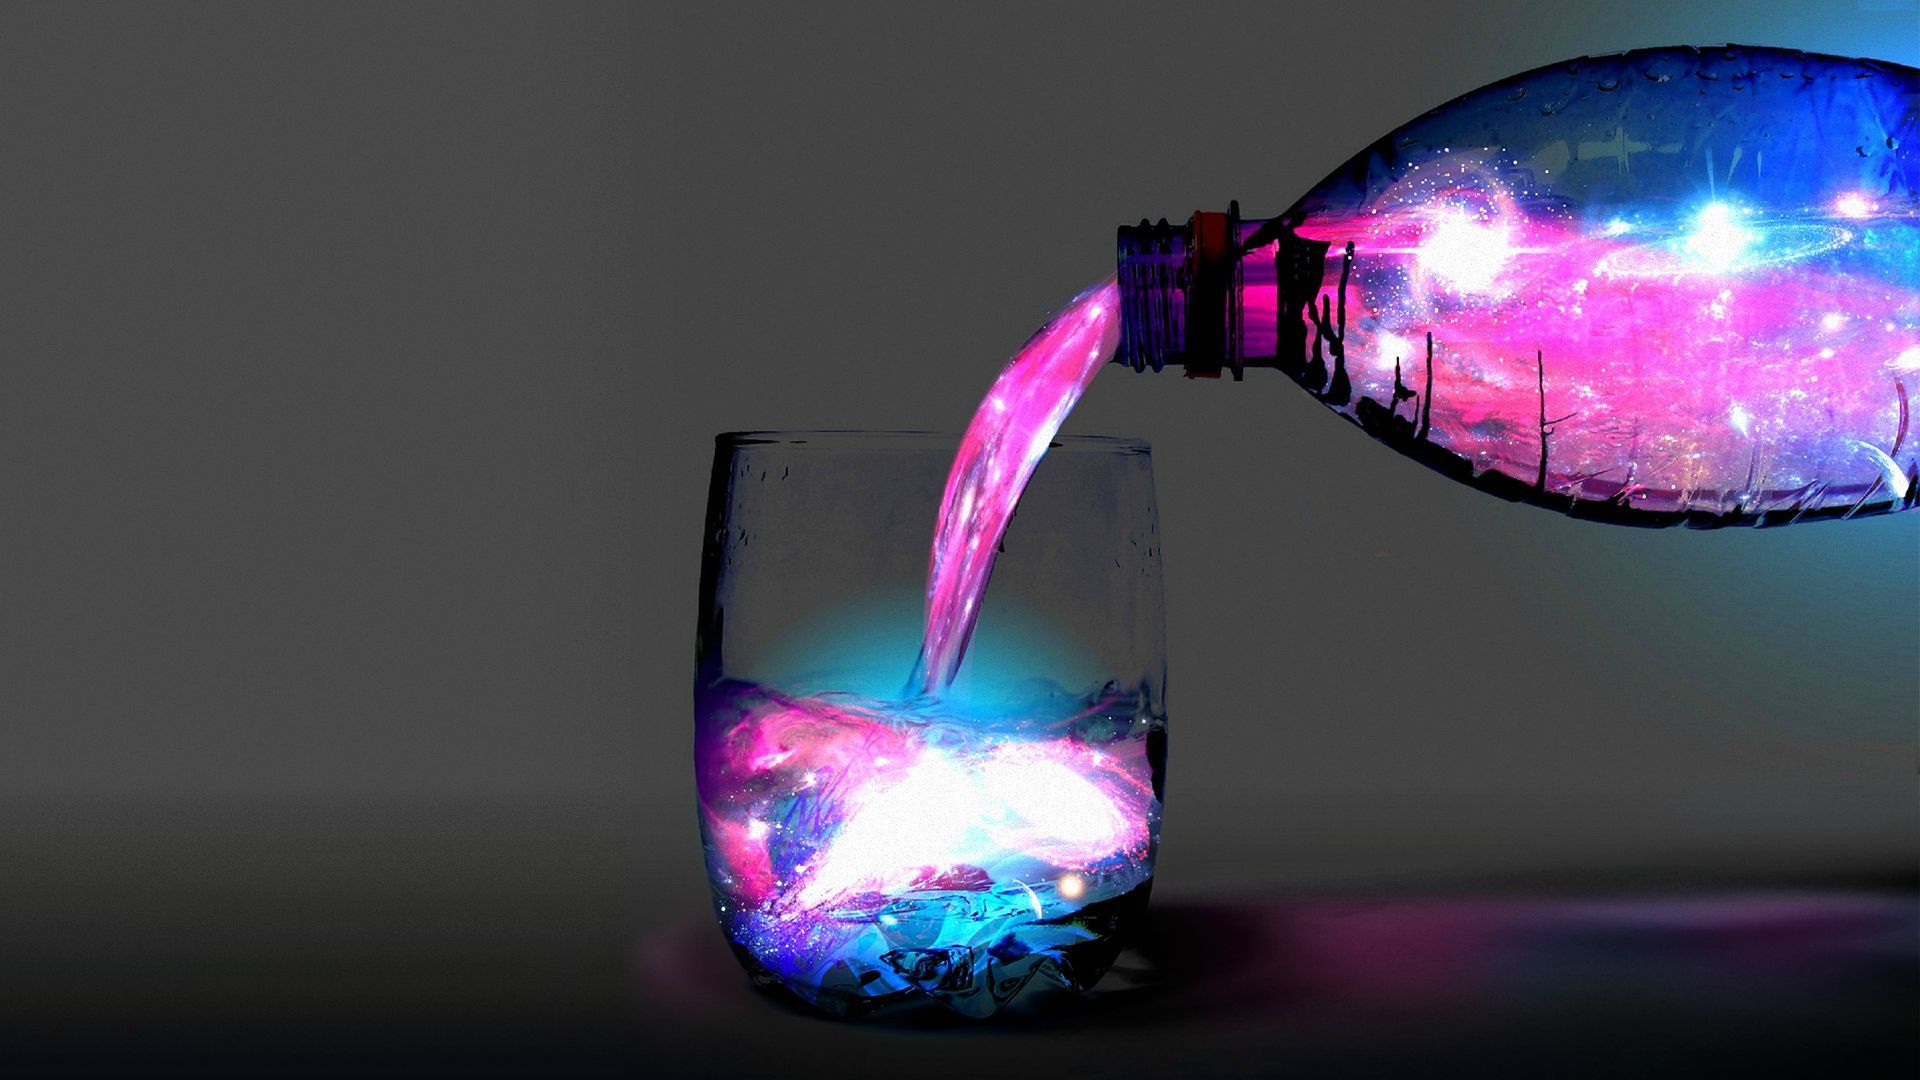 Neon Water by CarlosTown on DeviantArt